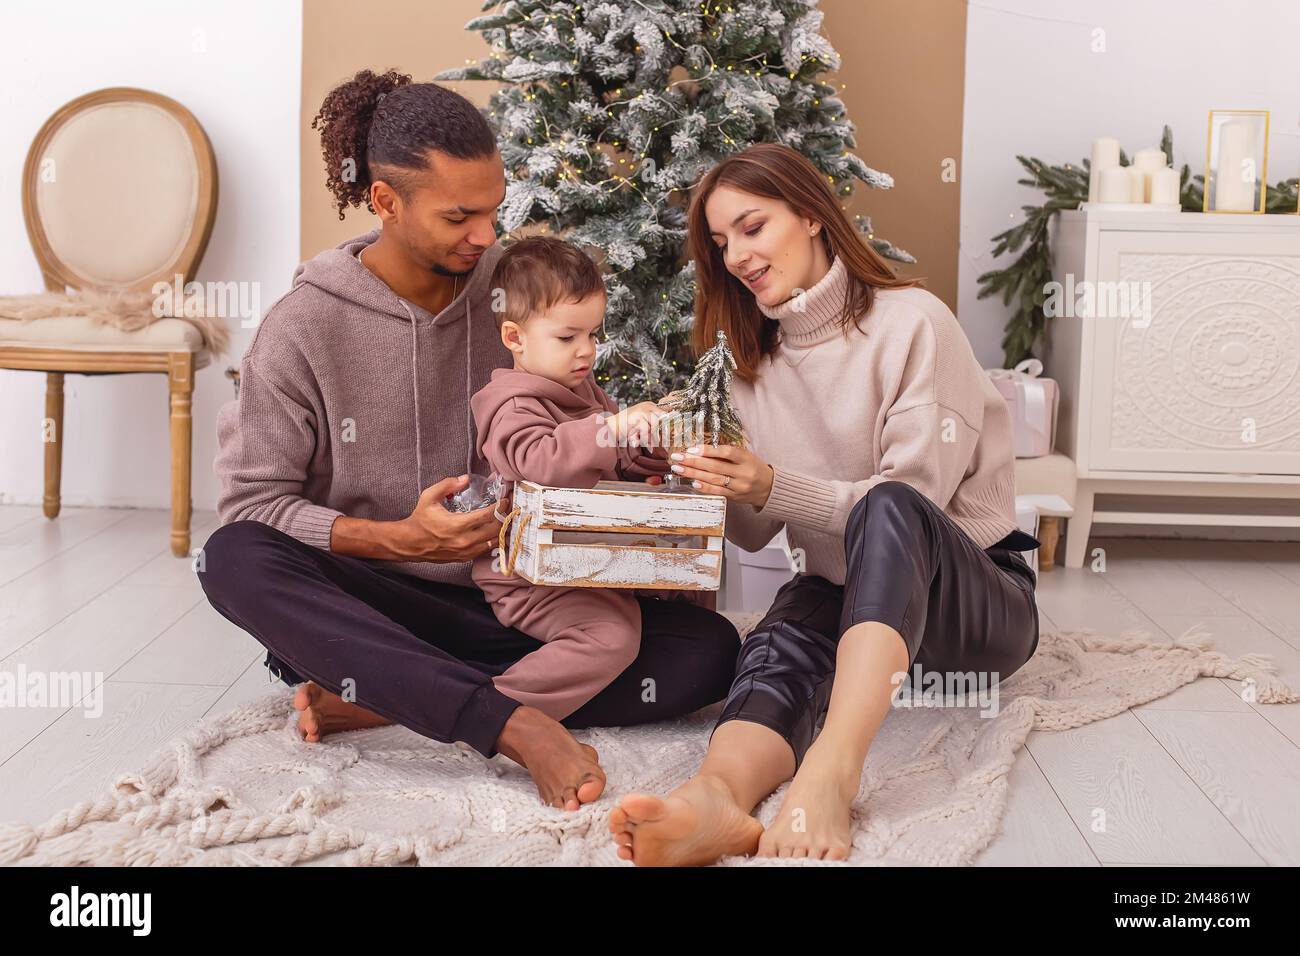 Una famiglia felice è seduta su una coperta a maglia, tenendo una scatola di legno con i giocattoli di Natale. Foto Stock